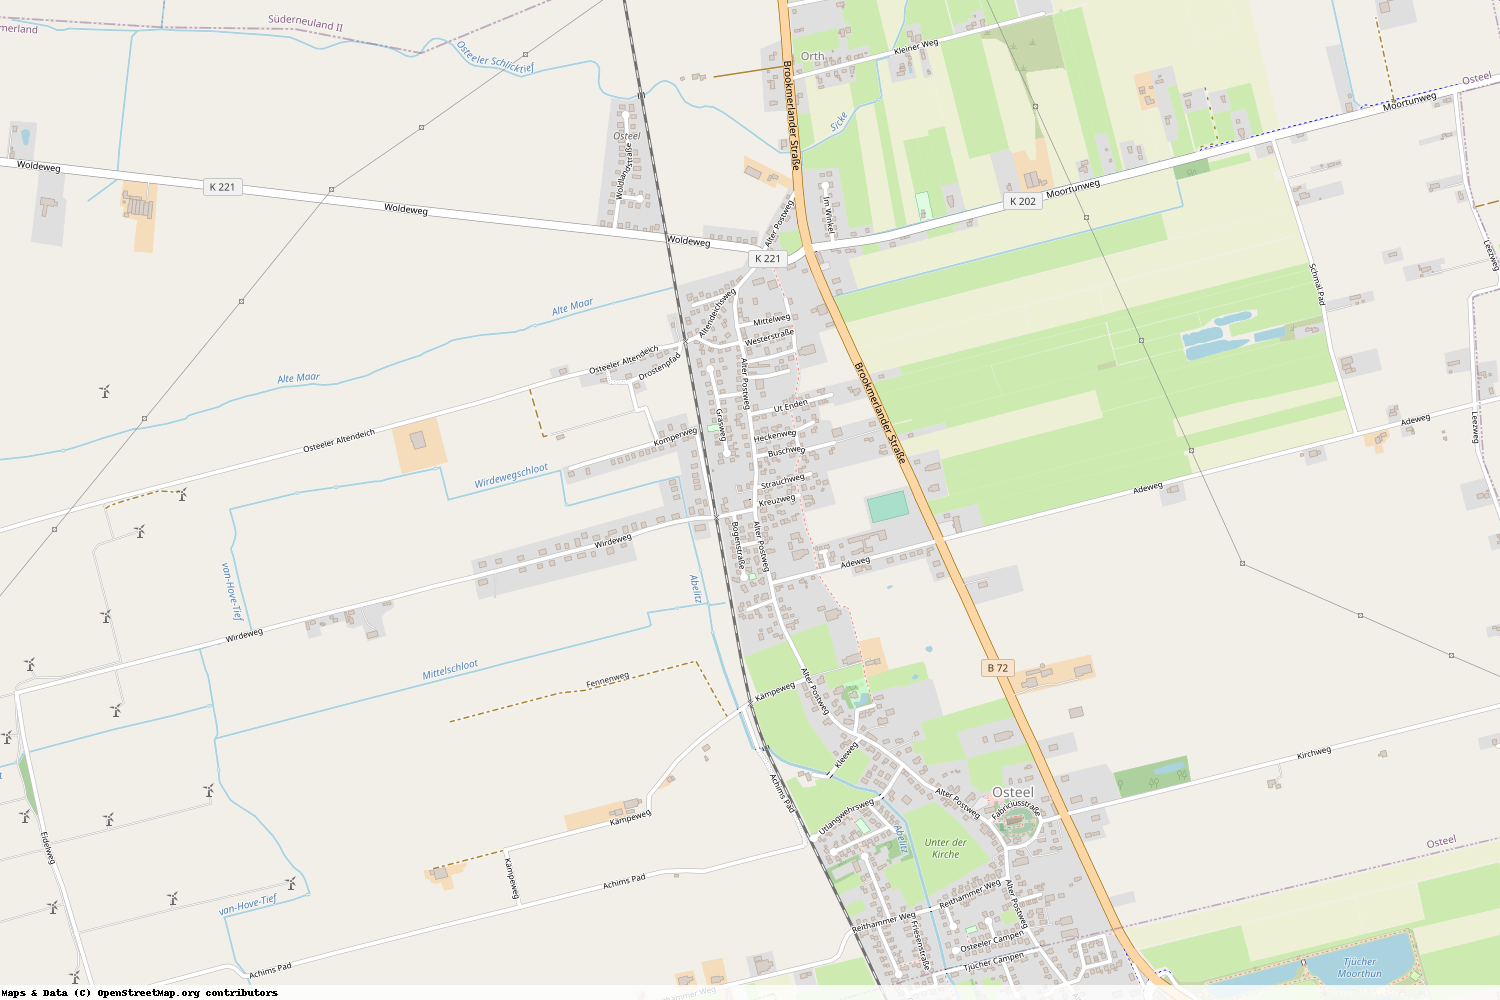 Ist gerade Stromausfall in Niedersachsen - Aurich - Osteel?